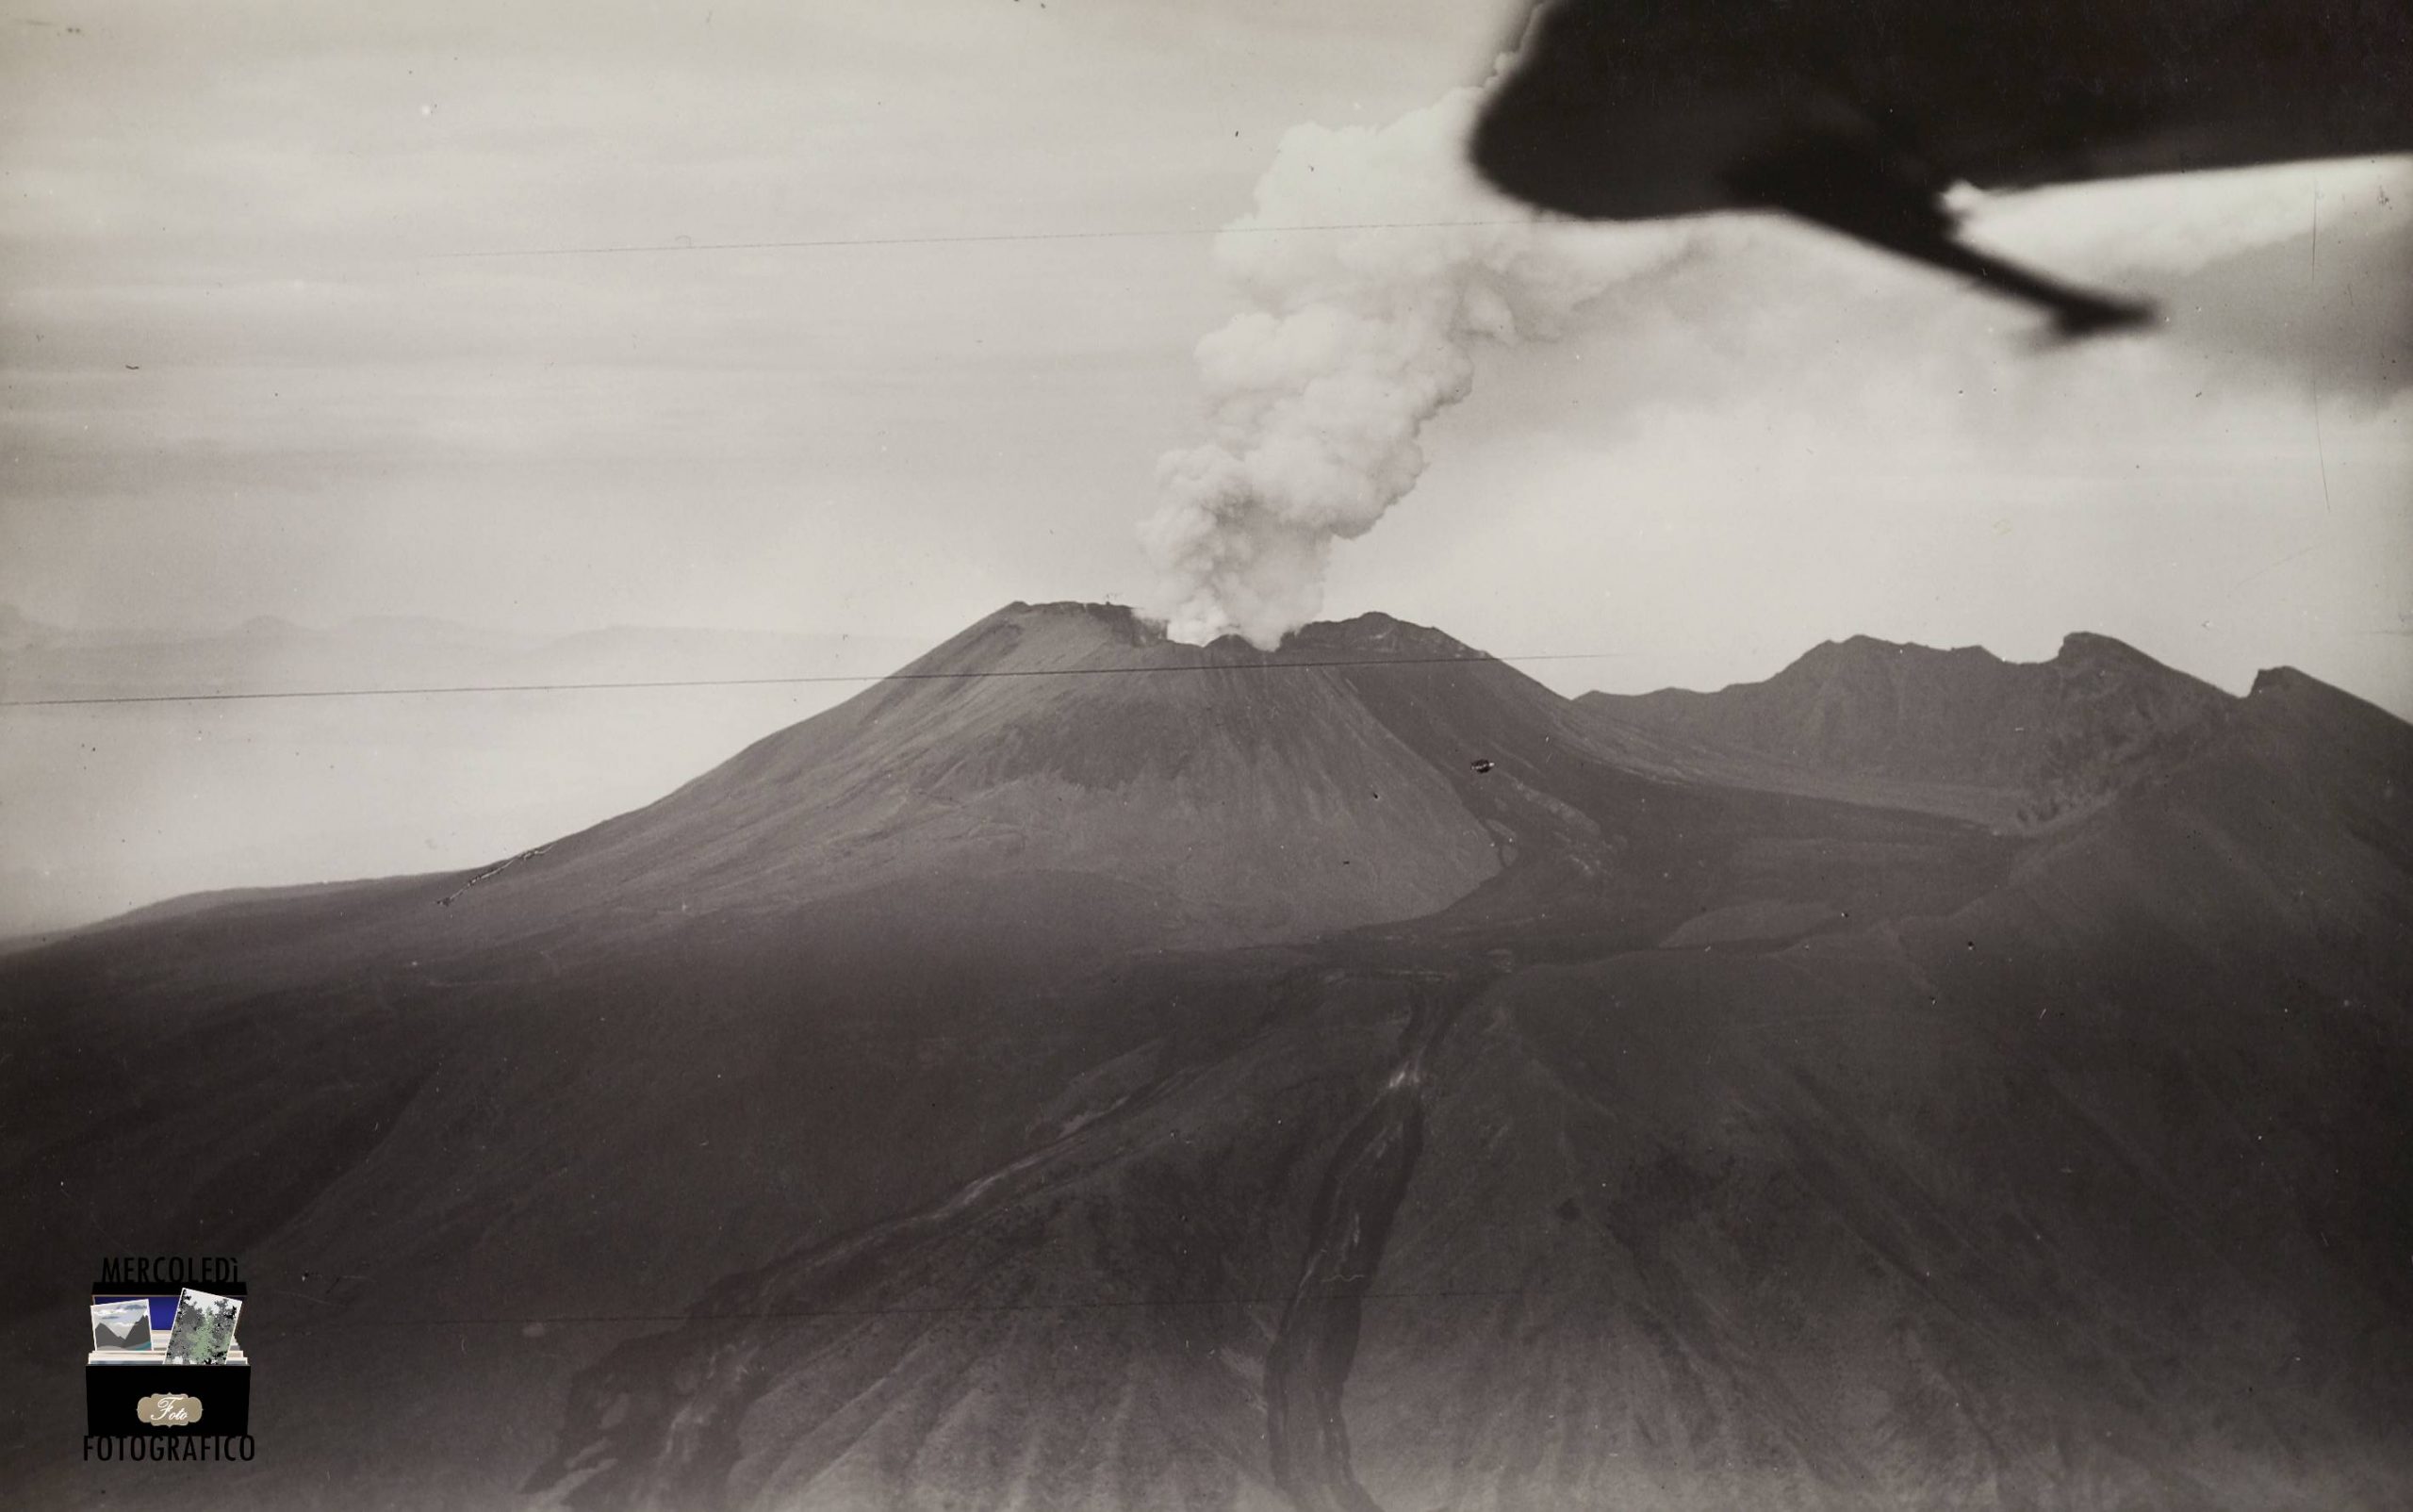 L’Attività vulcanica del Vesuvio negli scatti dell’IGM, 1929